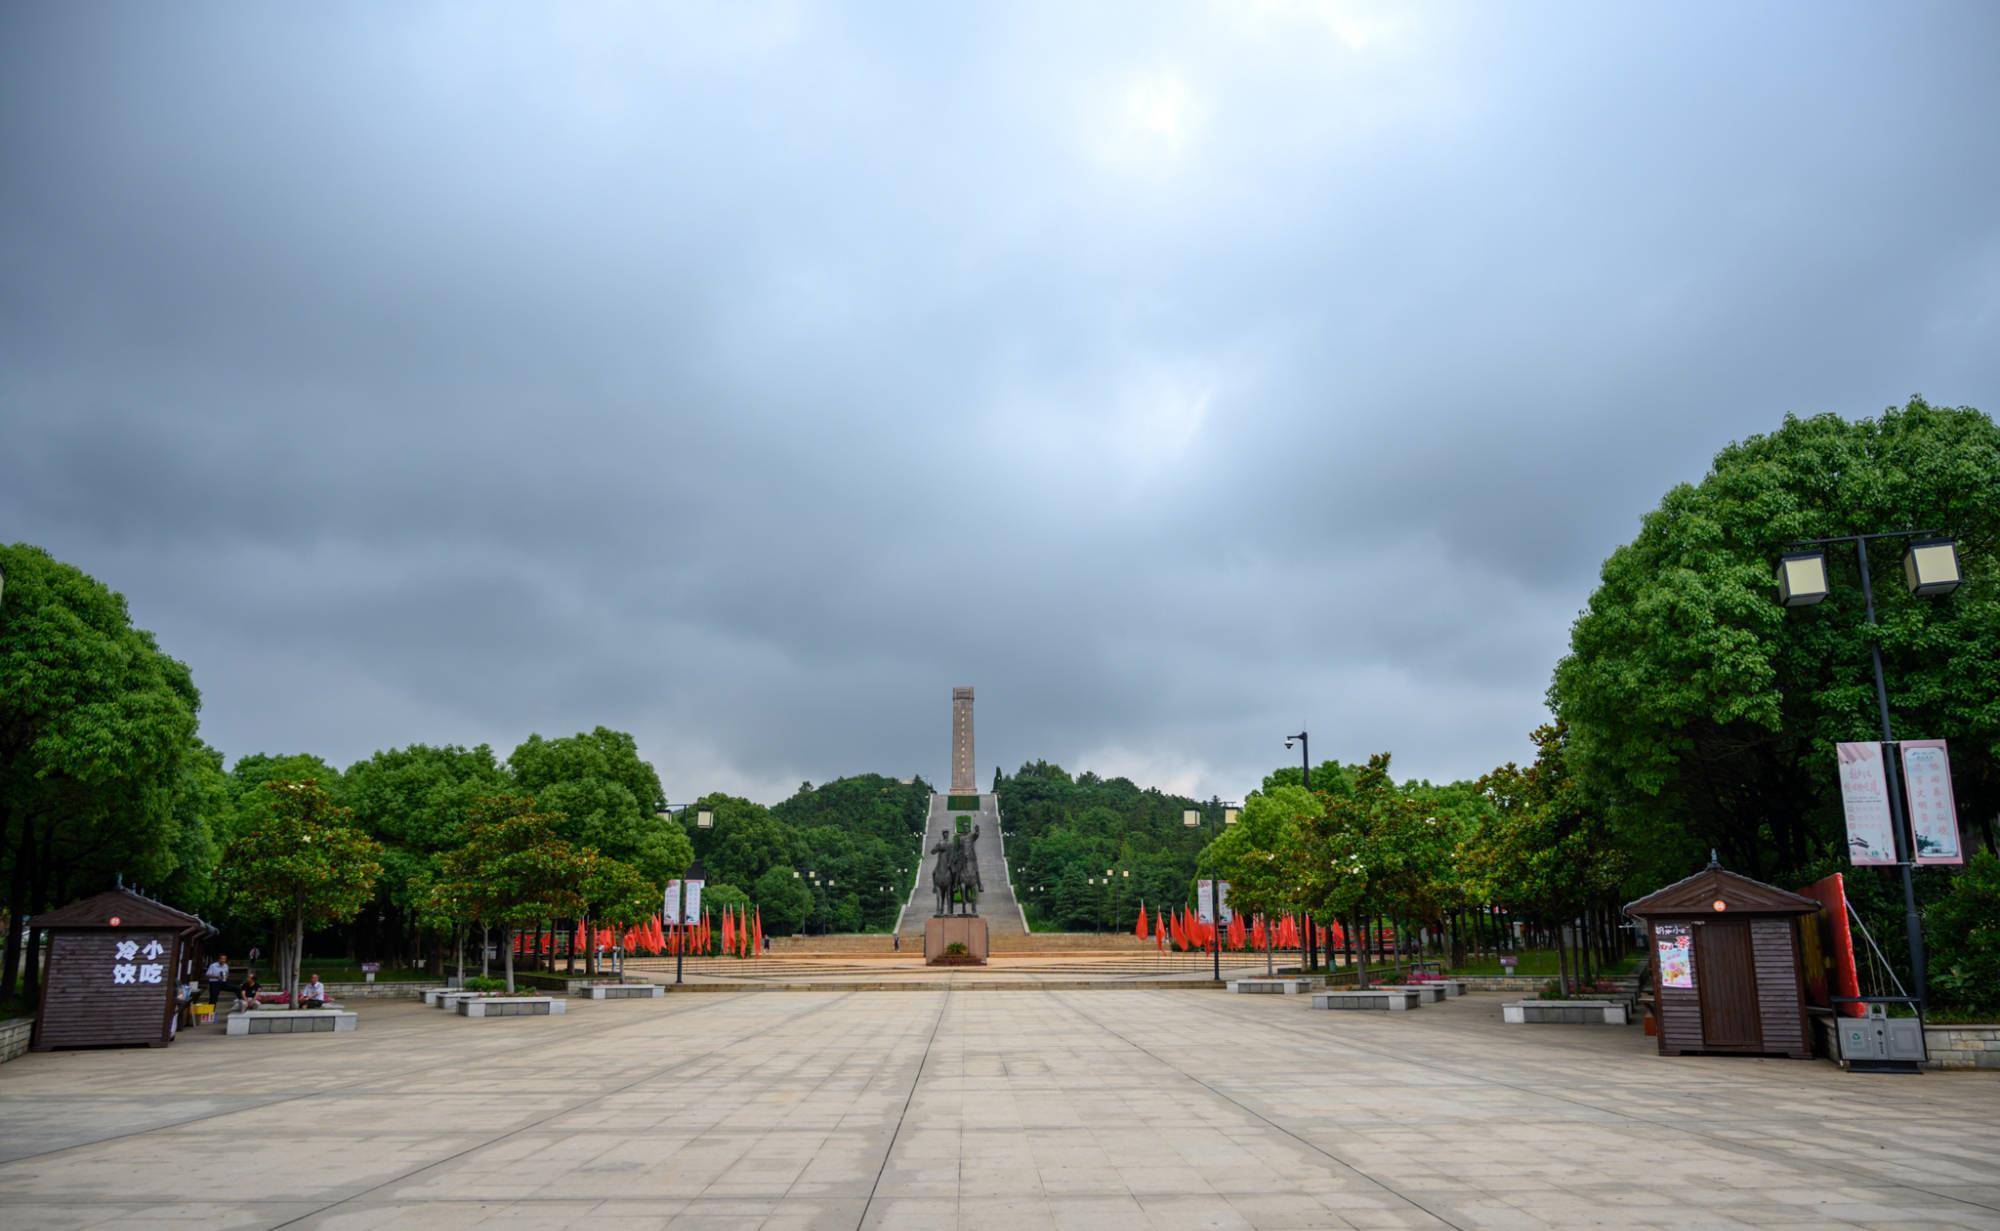 江苏茅山纪念碑有一大奇观，碑前放鞭炮空中响军号，获基尼斯之最